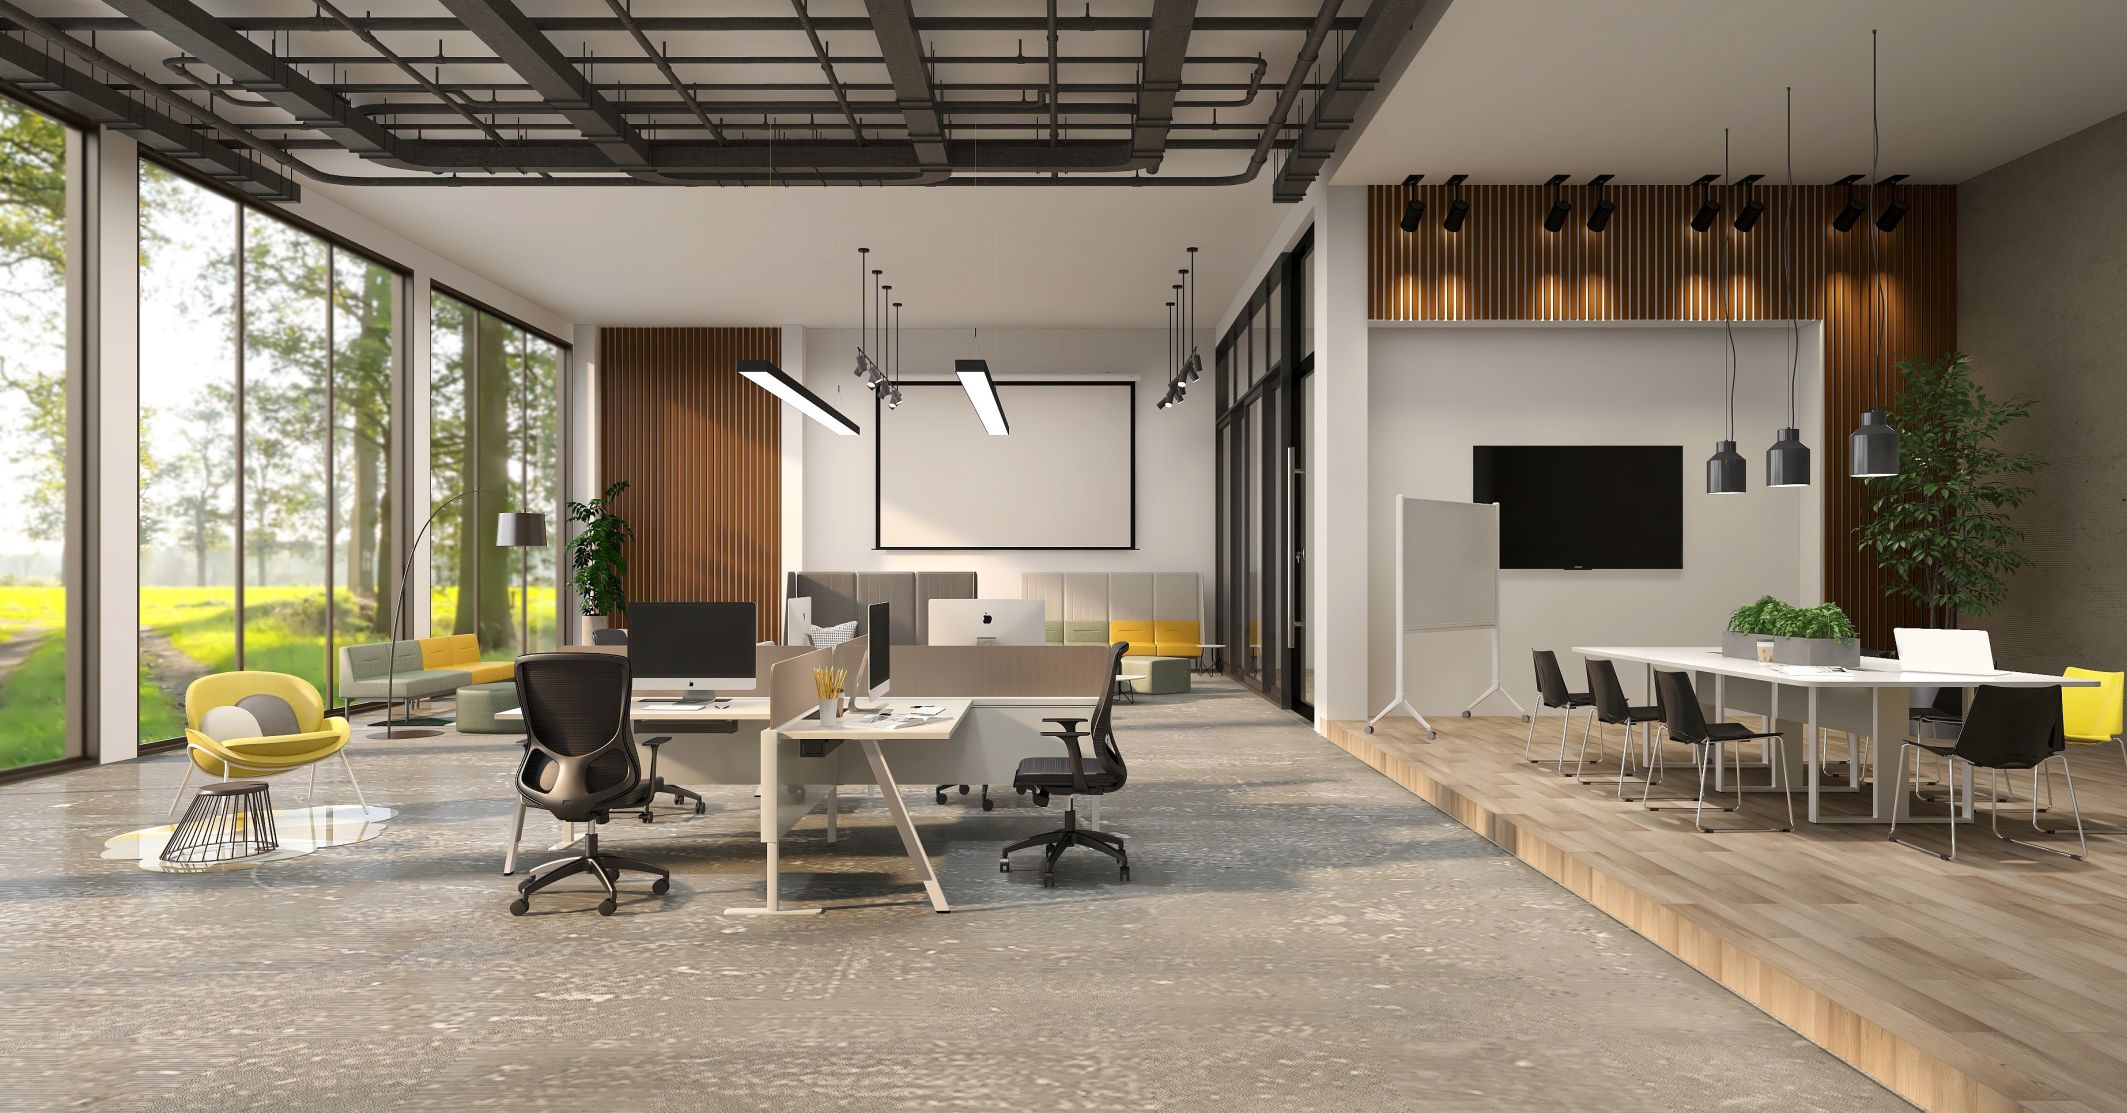 面向未来的办公室需要多功能空间 - 圣奥办公家具官网_圣奥办公家具 - 松果号-3